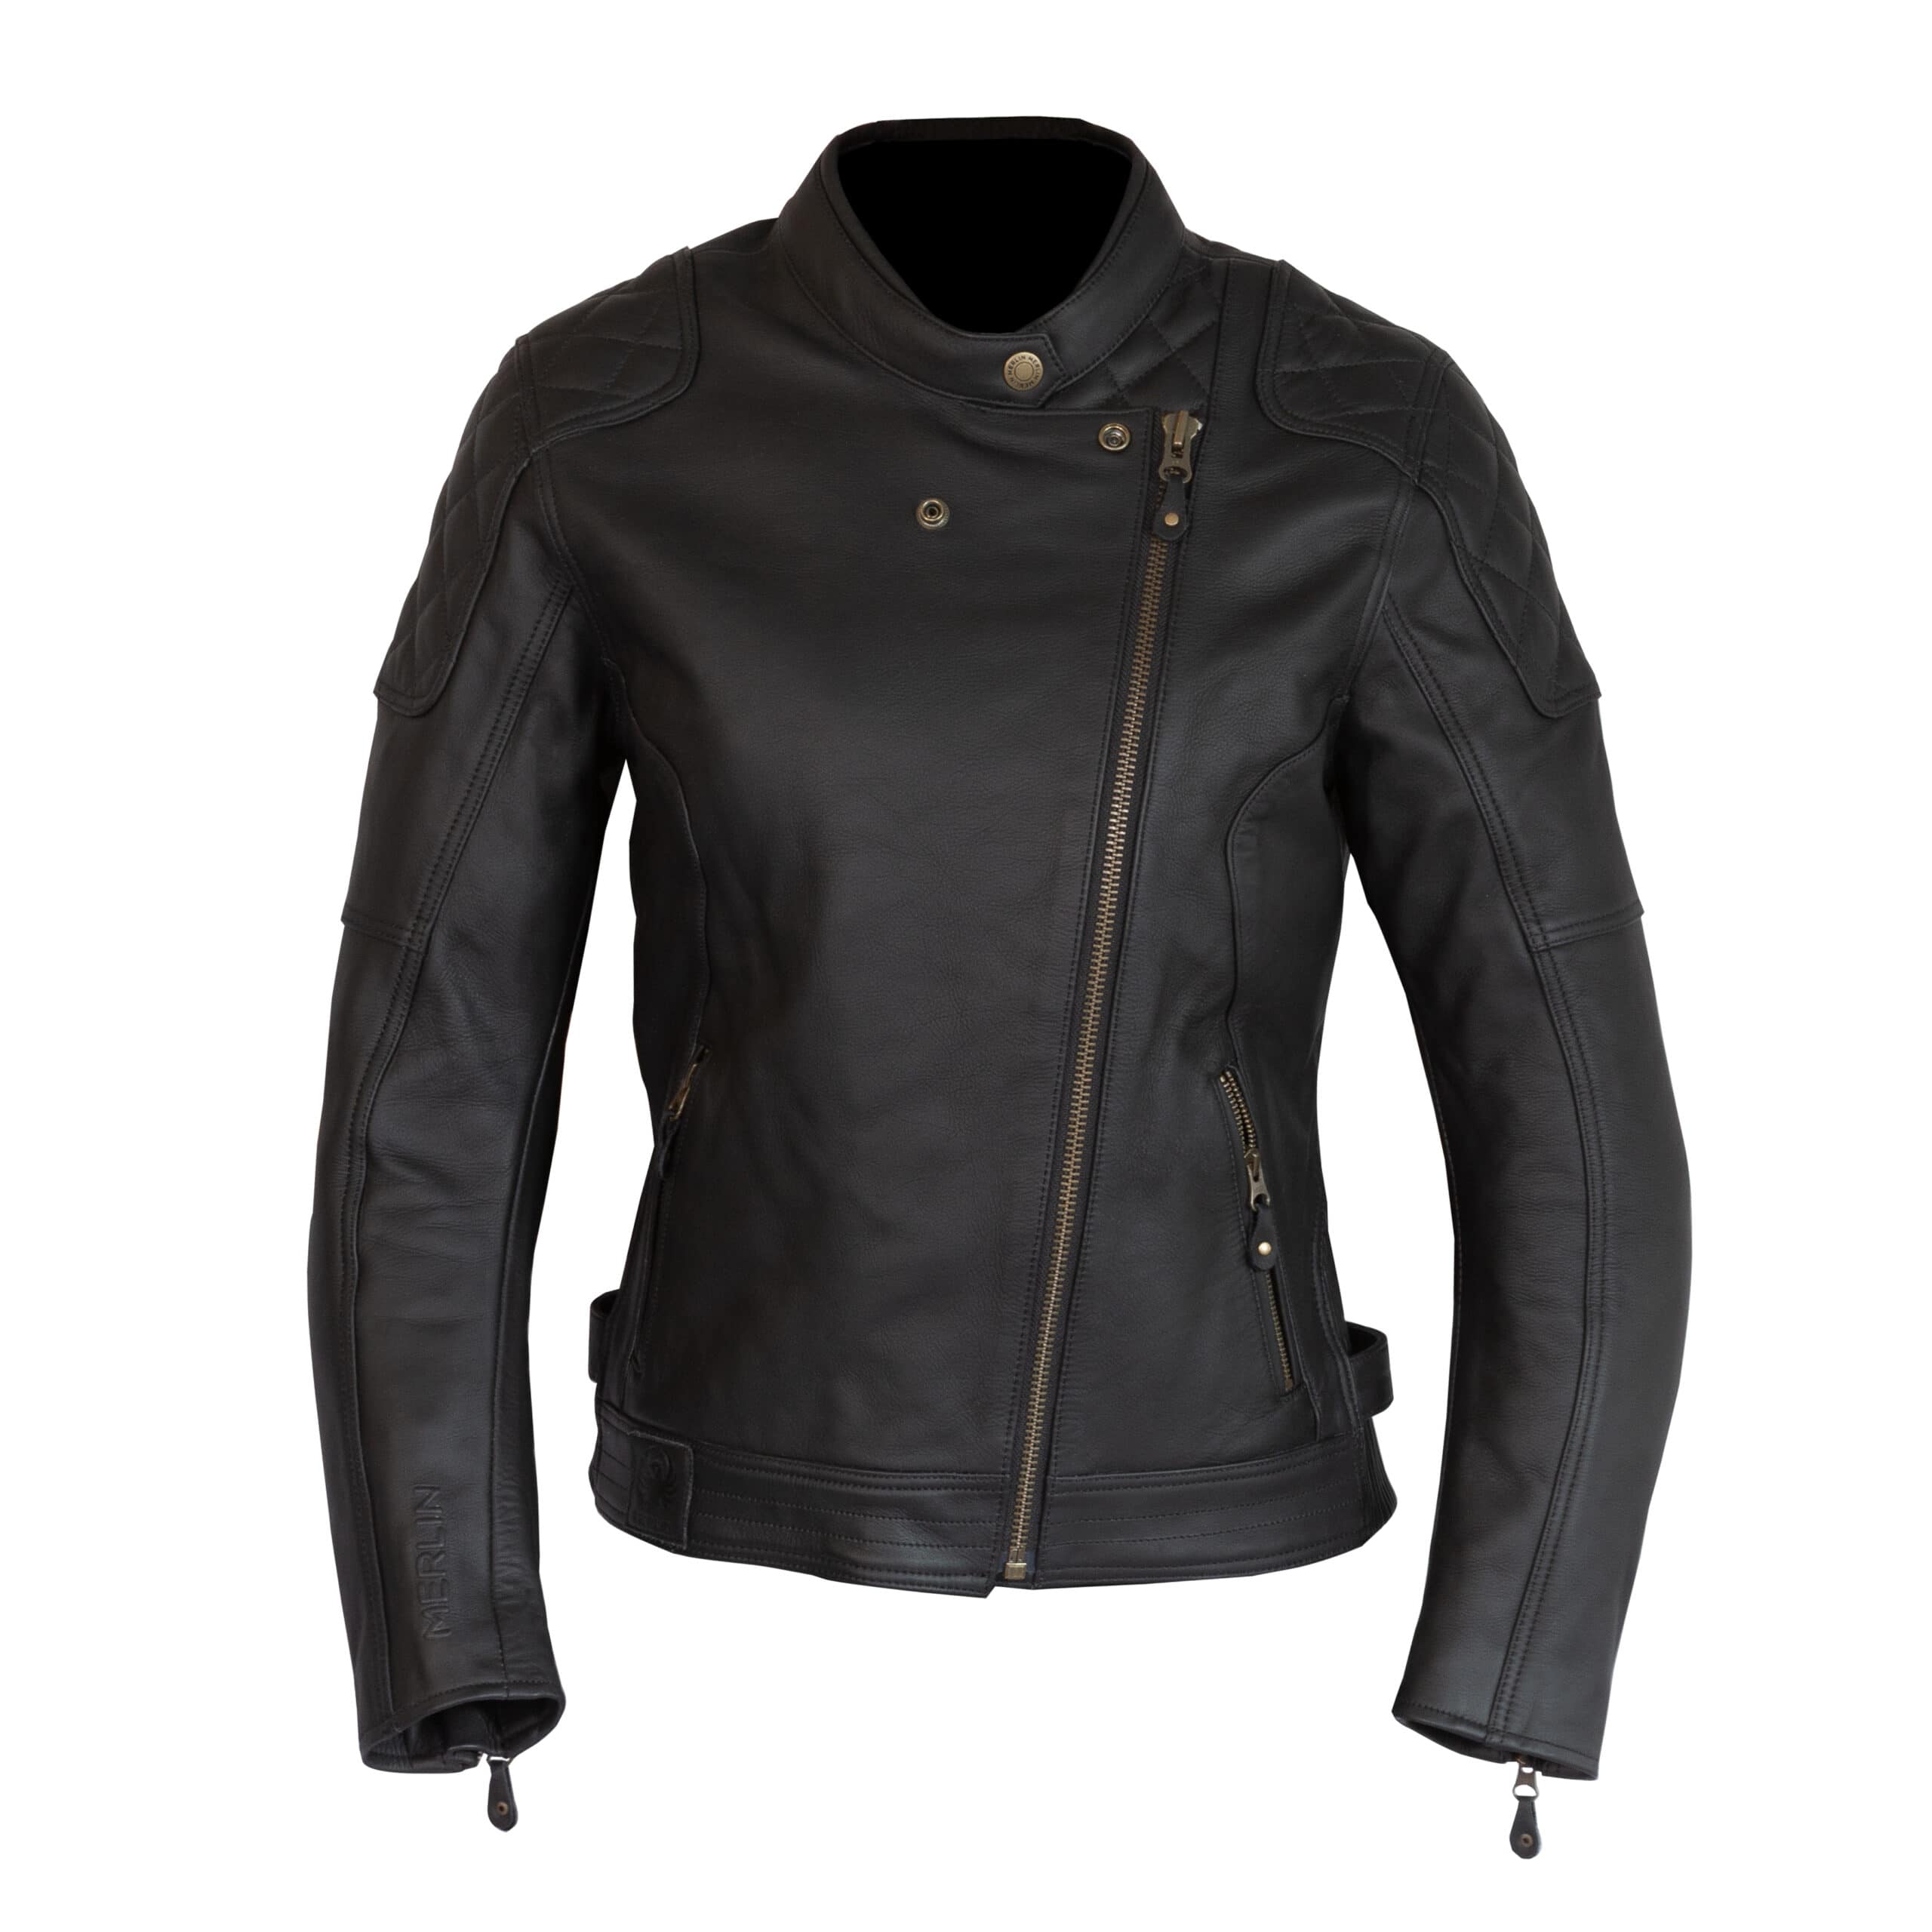 Merlin Bristol Ladies jacket in black